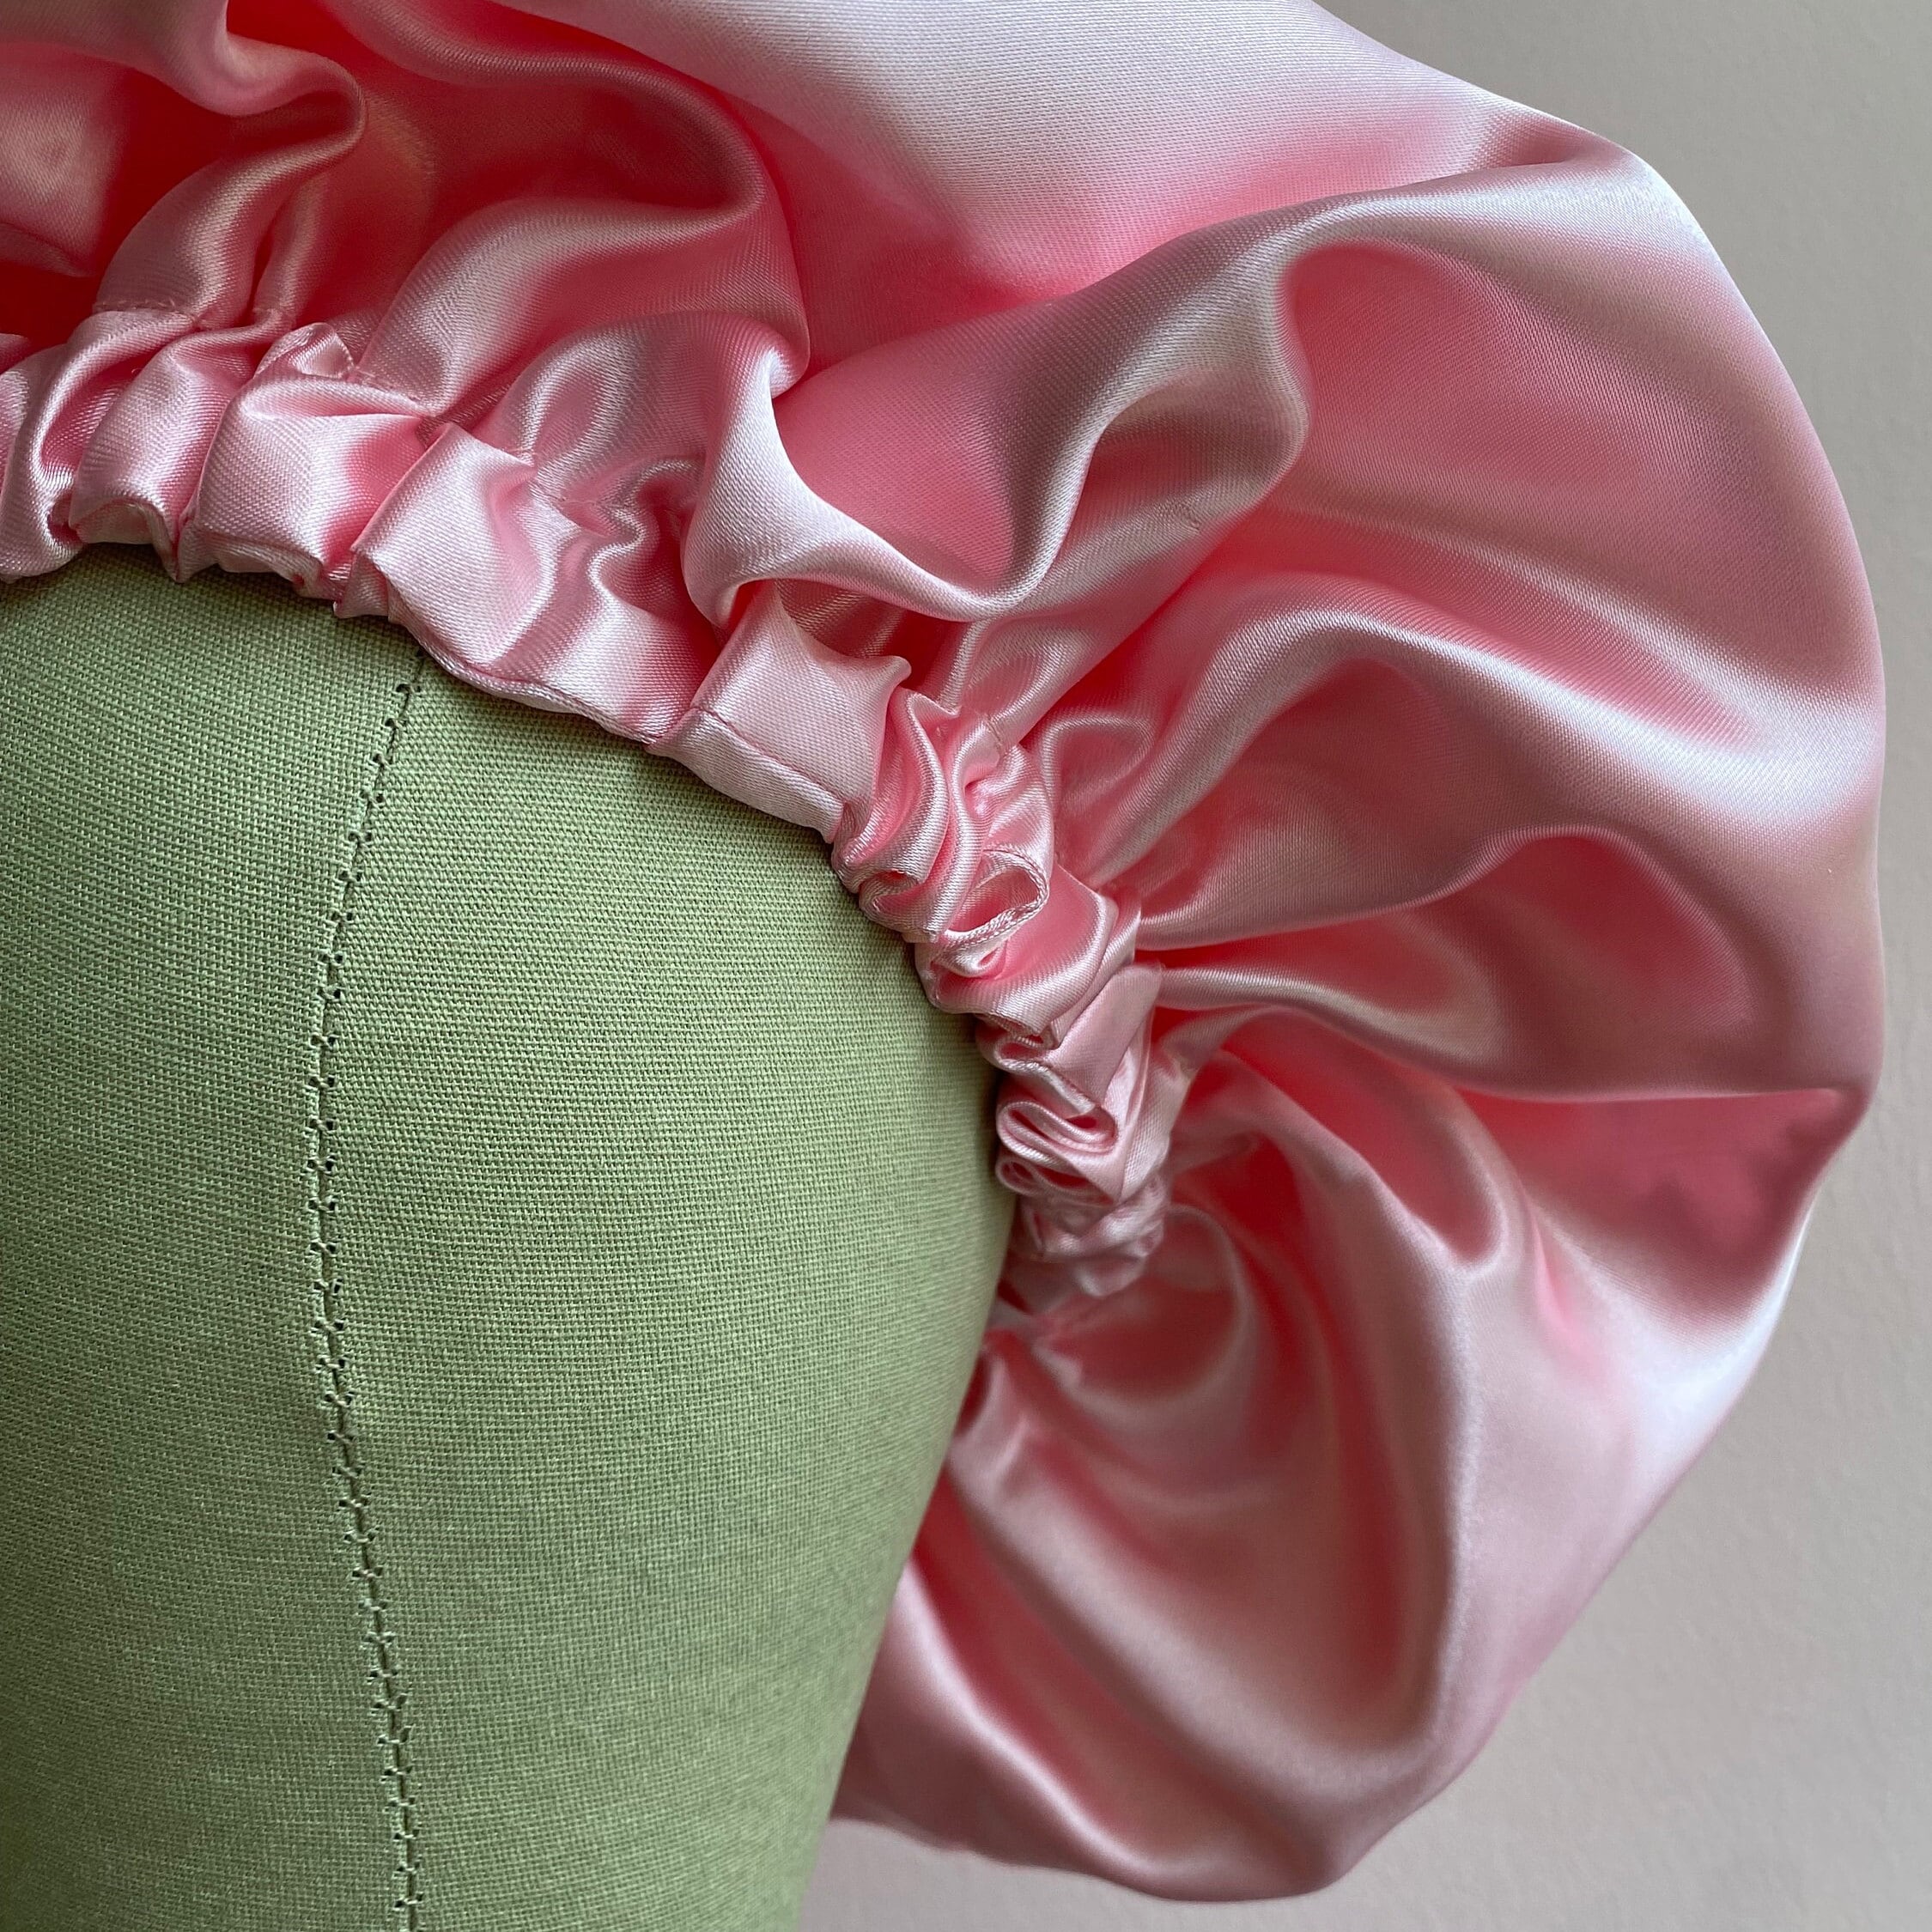 Bonnet en satin pour protéger les cheveux et boucles afro pendant le  sommeil, ROSE, rose rose, JEN by Curly Hair Care -  France